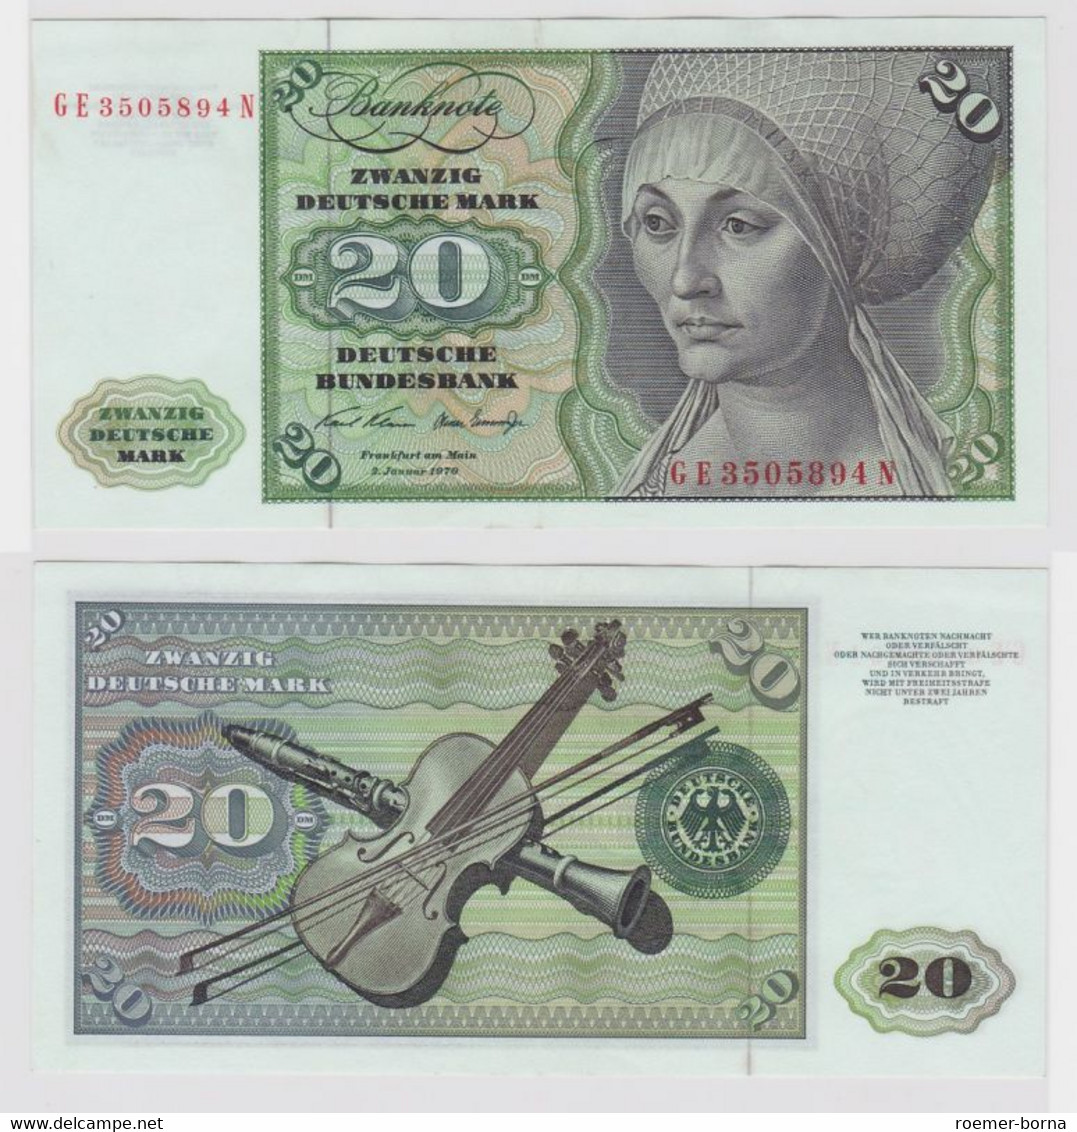 T110384 Banknote 20 DM Deutsche Mark Ro. 271b Schein 2.Jan. 1970 KN GE 3505894 N - 20 Deutsche Mark